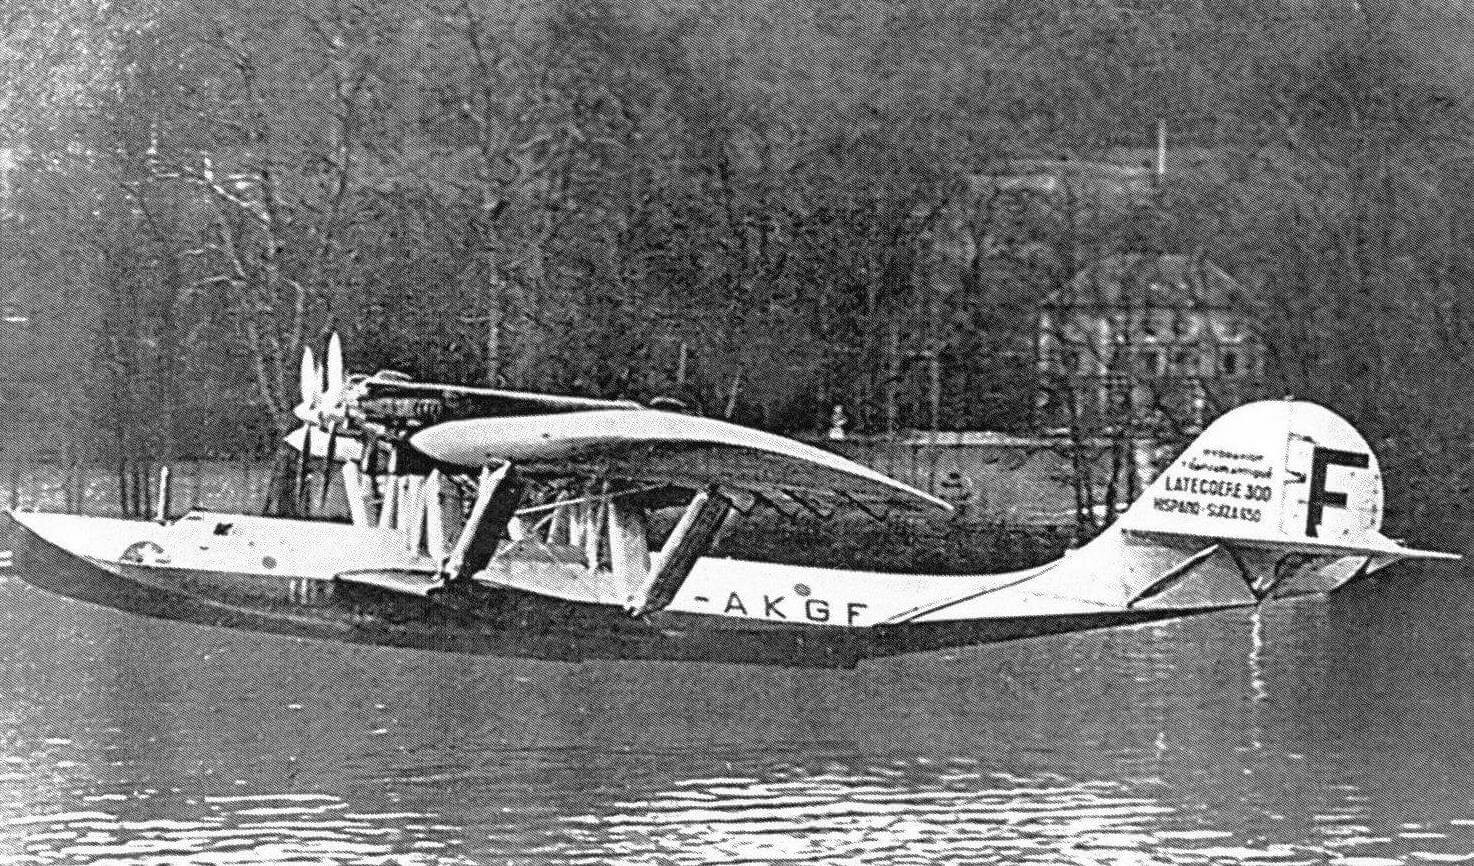 Посадка «Южного Креста» на Сене после своего первого перелета через Атлантику в январе 1934 года. До переделки хвостового оперения эффективности рулей не хватало, поэтому для сохранения управляемости при посадке передние моторы выключались, а задние работали на номинальных оборотах